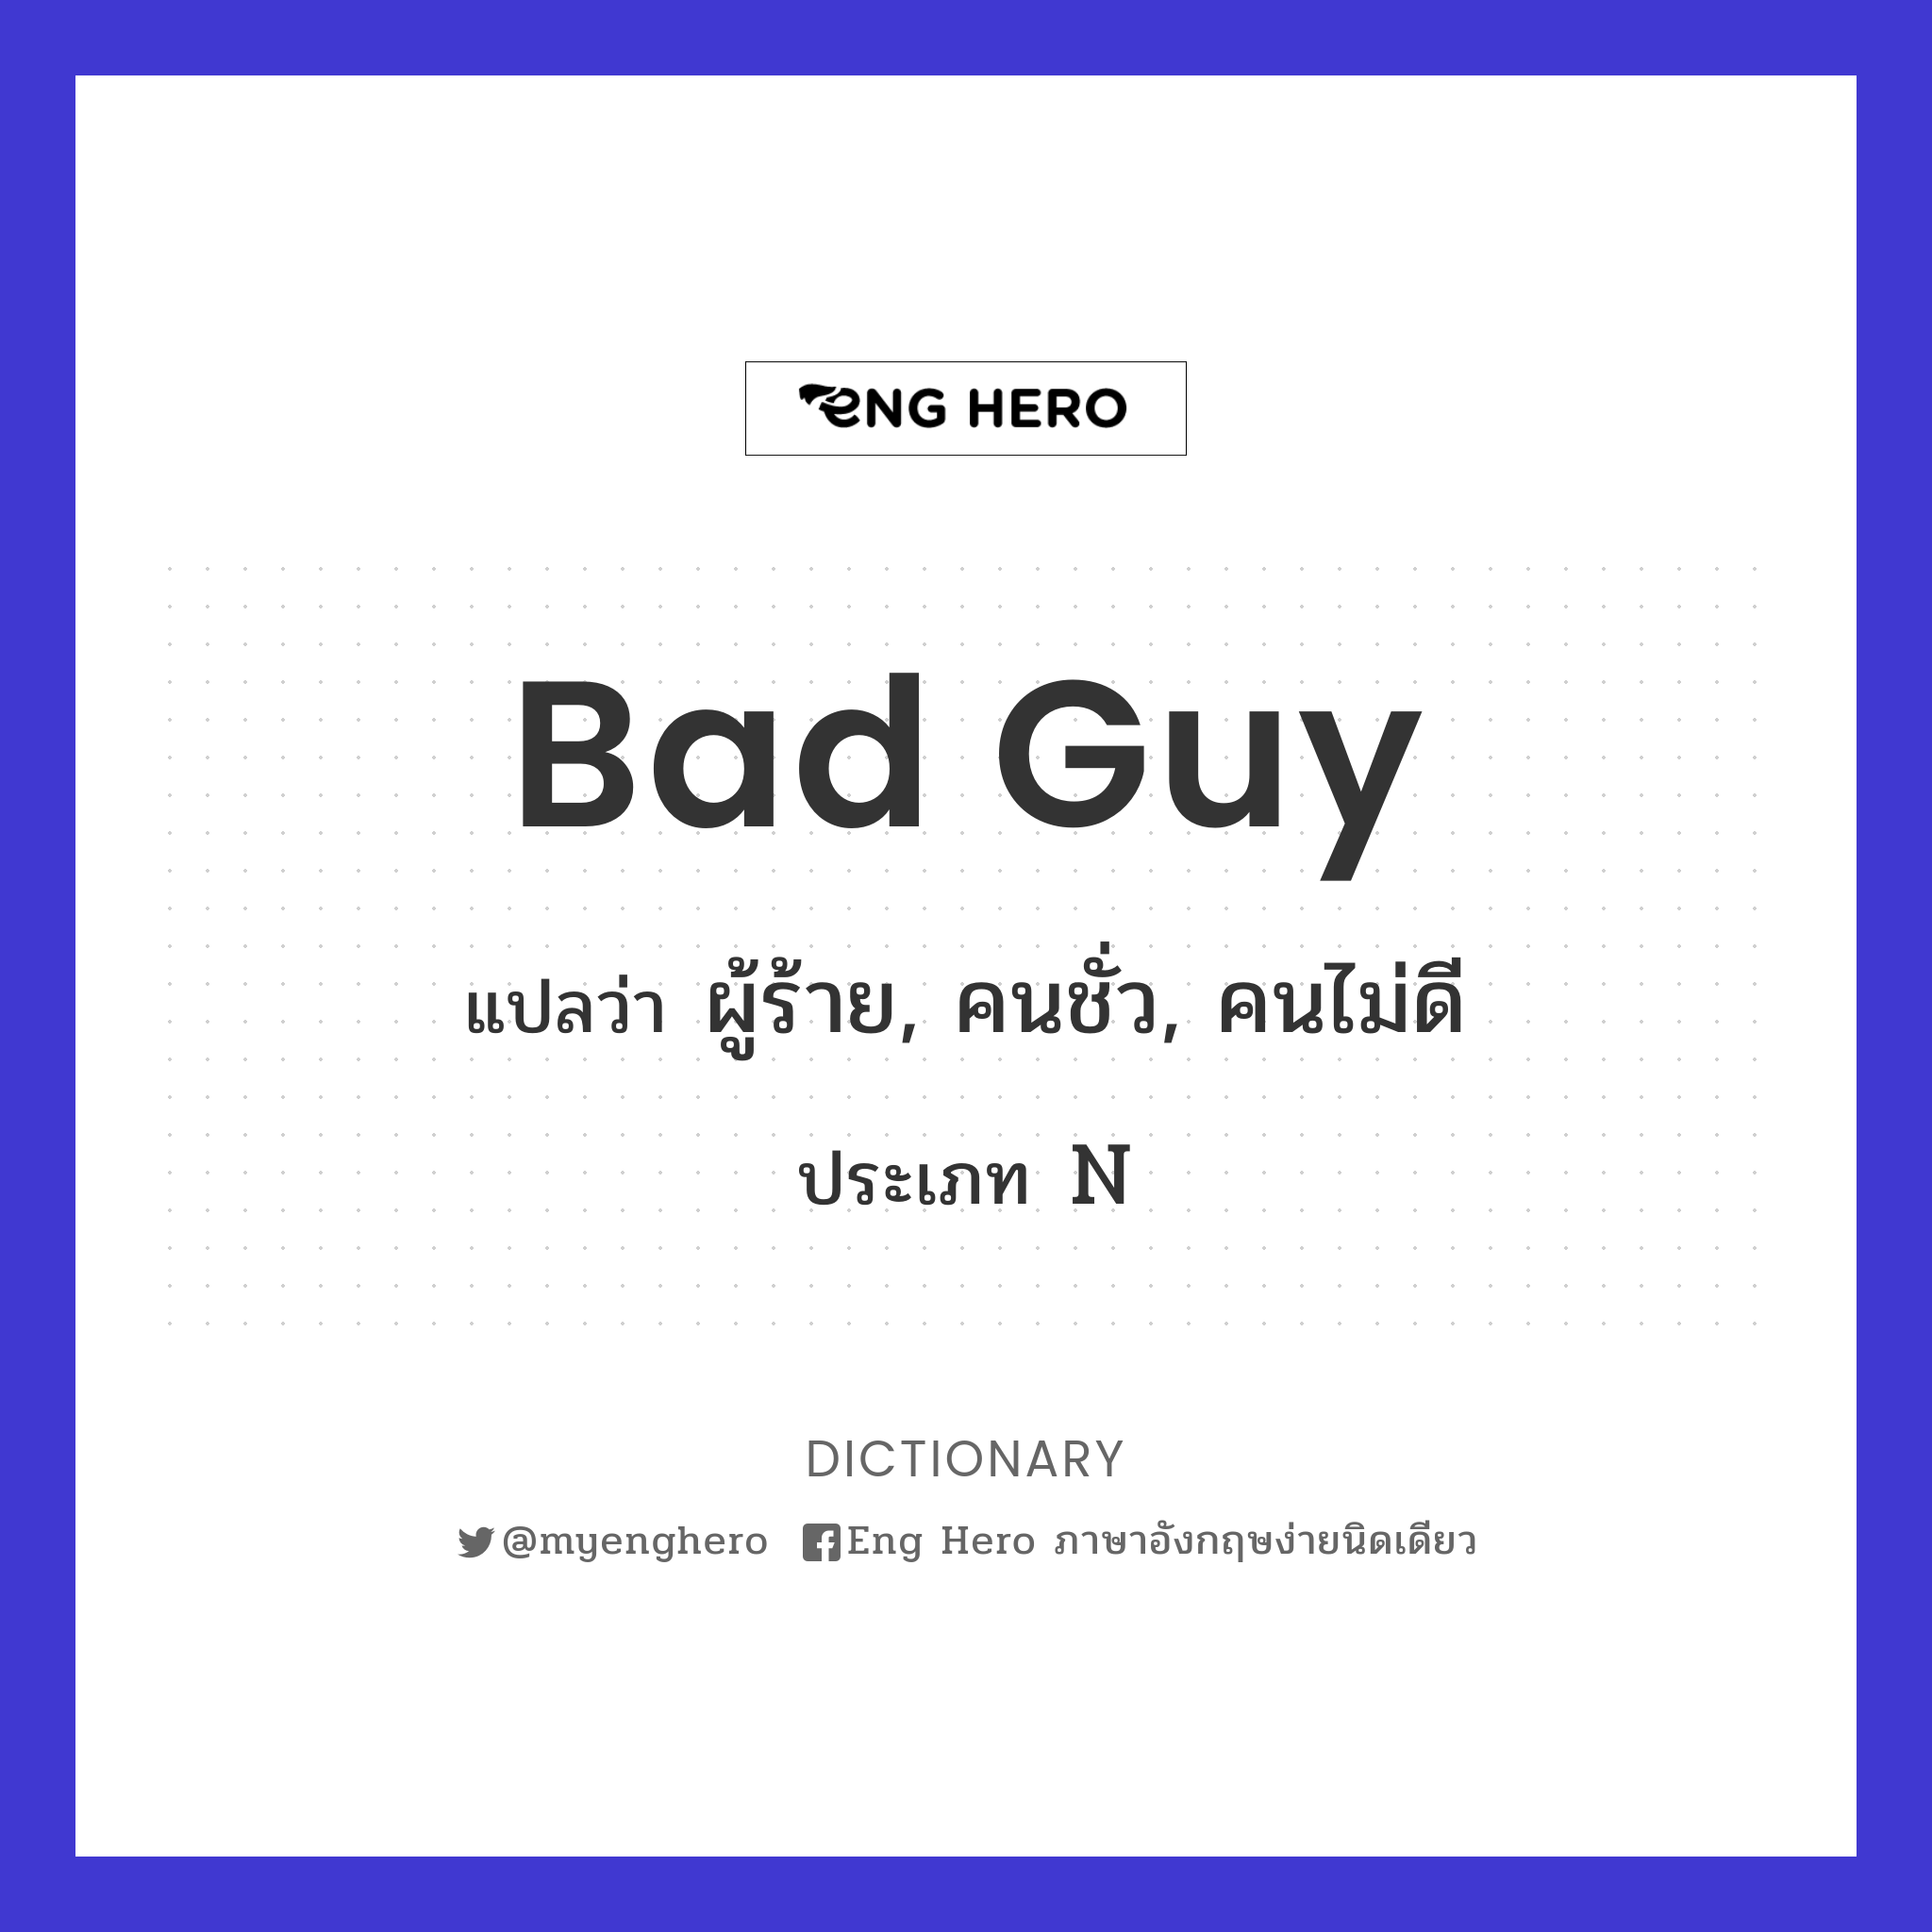 Bad Guy แปลว่า ผู้ร้าย, คนชั่ว, คนไม่ดี | Eng Hero เรียนภาษาอังกฤษ ออนไลน์  ฟรี